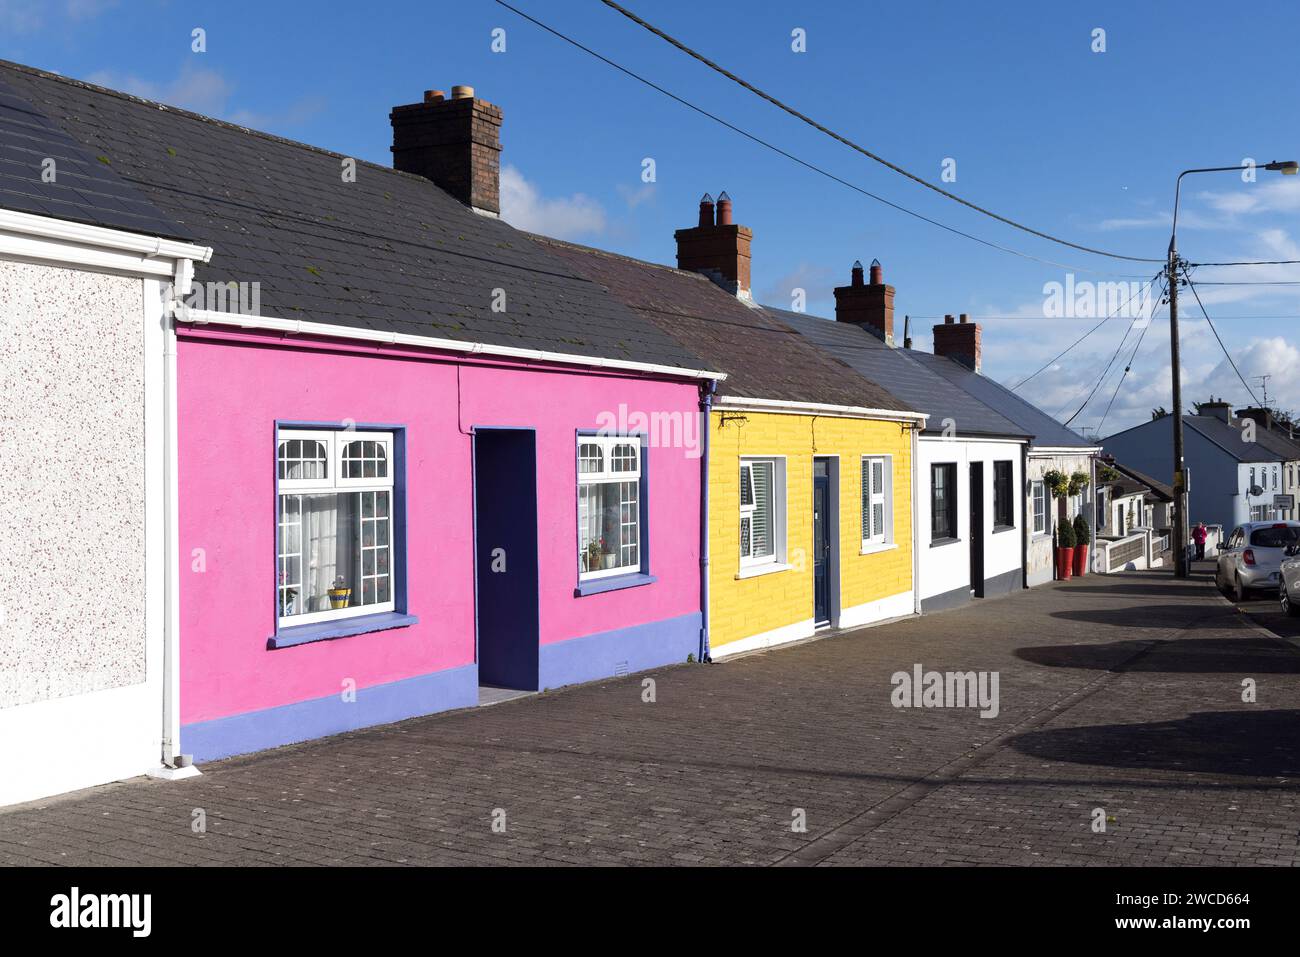 Rangée de maisons peintes de couleurs vives, Kells, Co. Meath, Irlande Banque D'Images